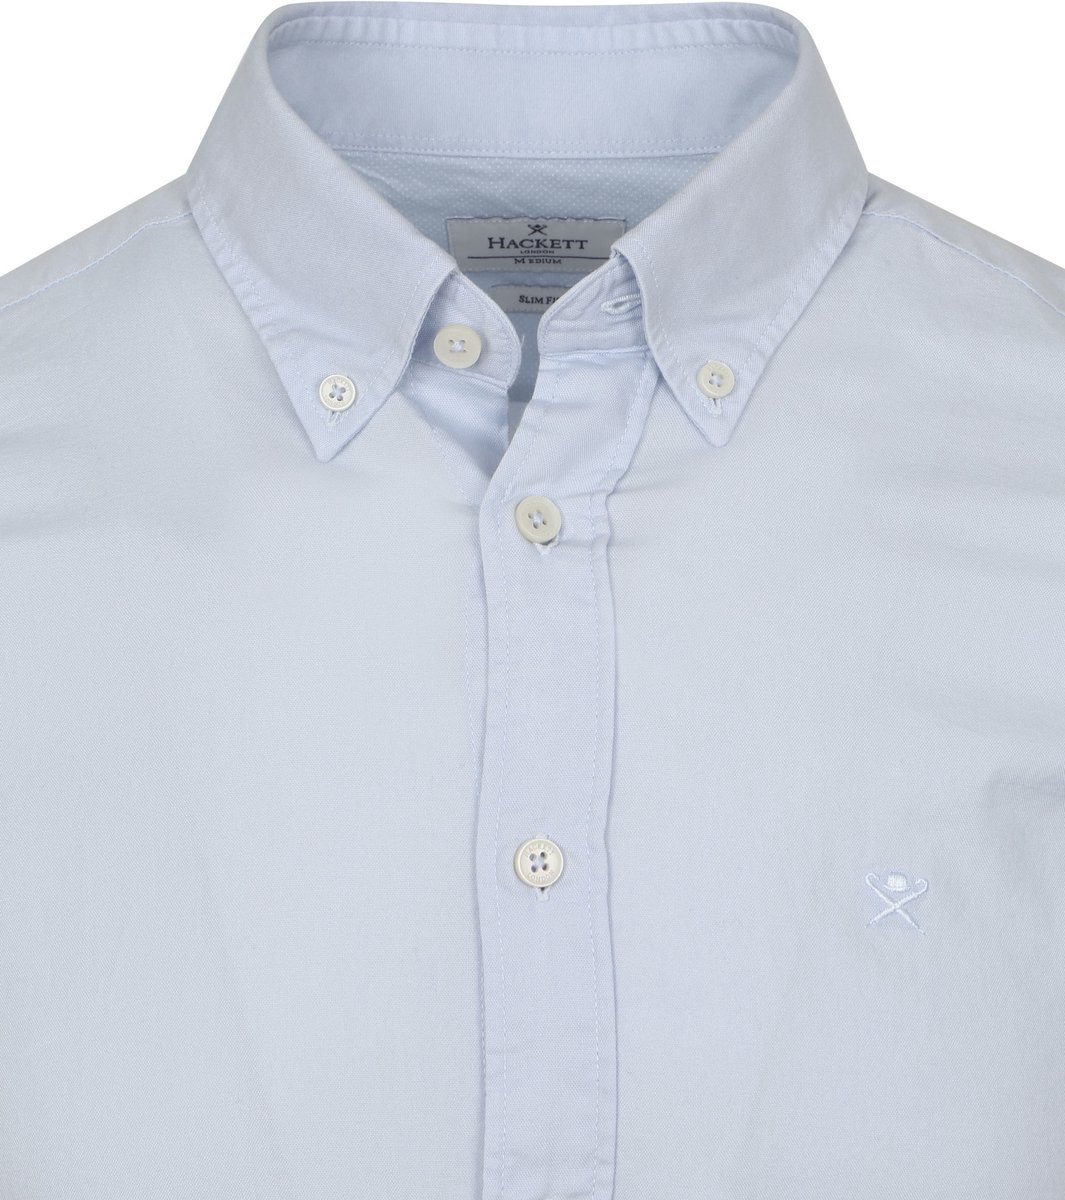 Hackett - Overhemd Lichtblauw - Maat XL - Slim-fit